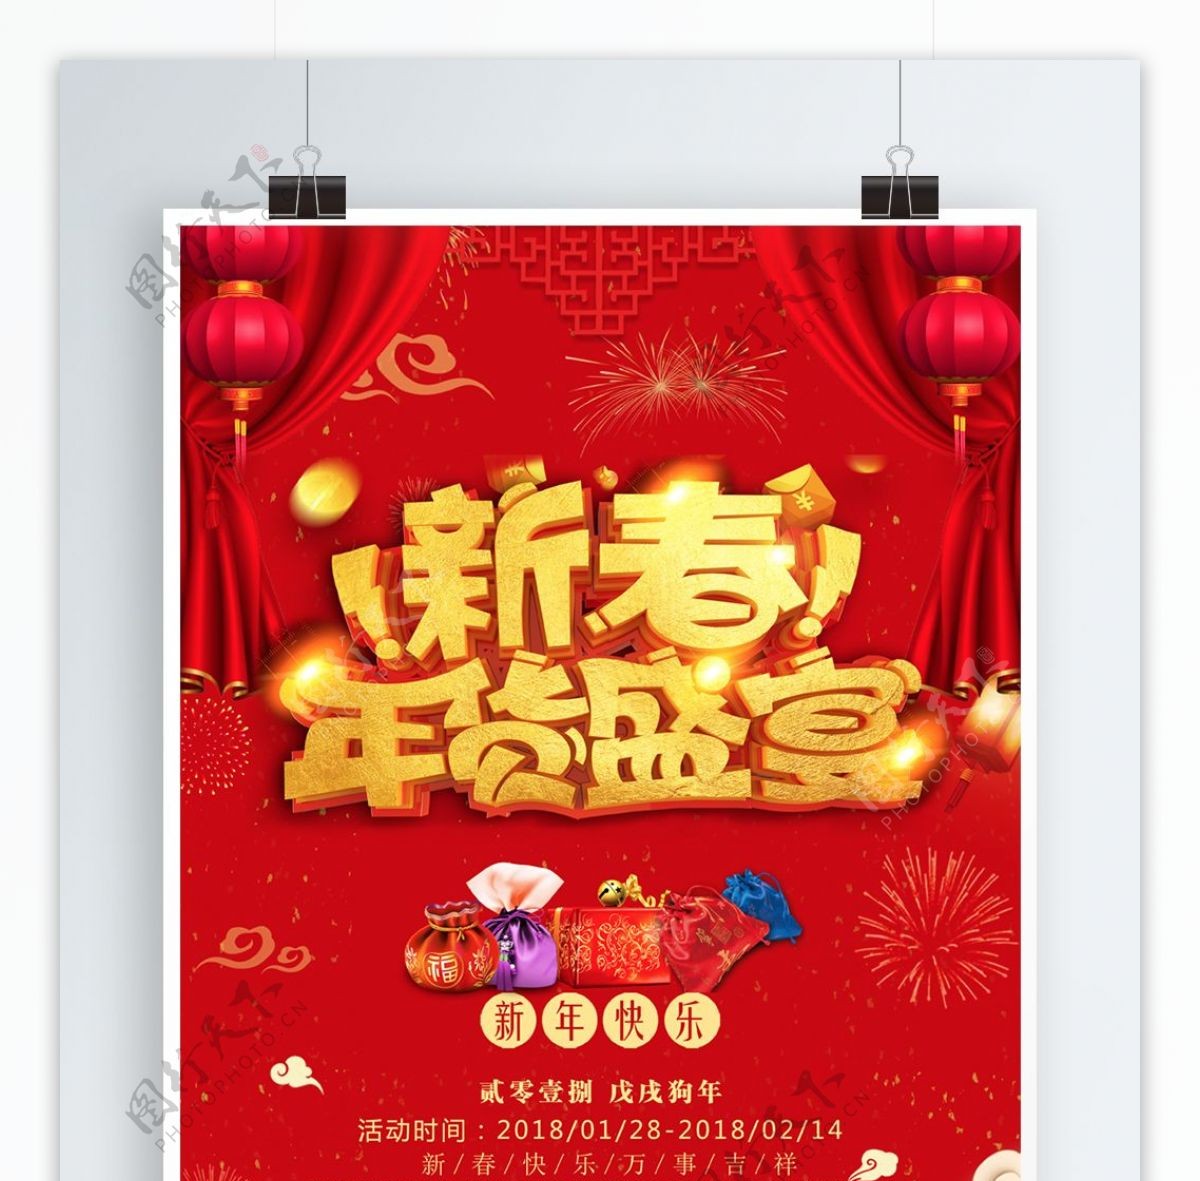 新春年货盛宴红色大气促销海报设计